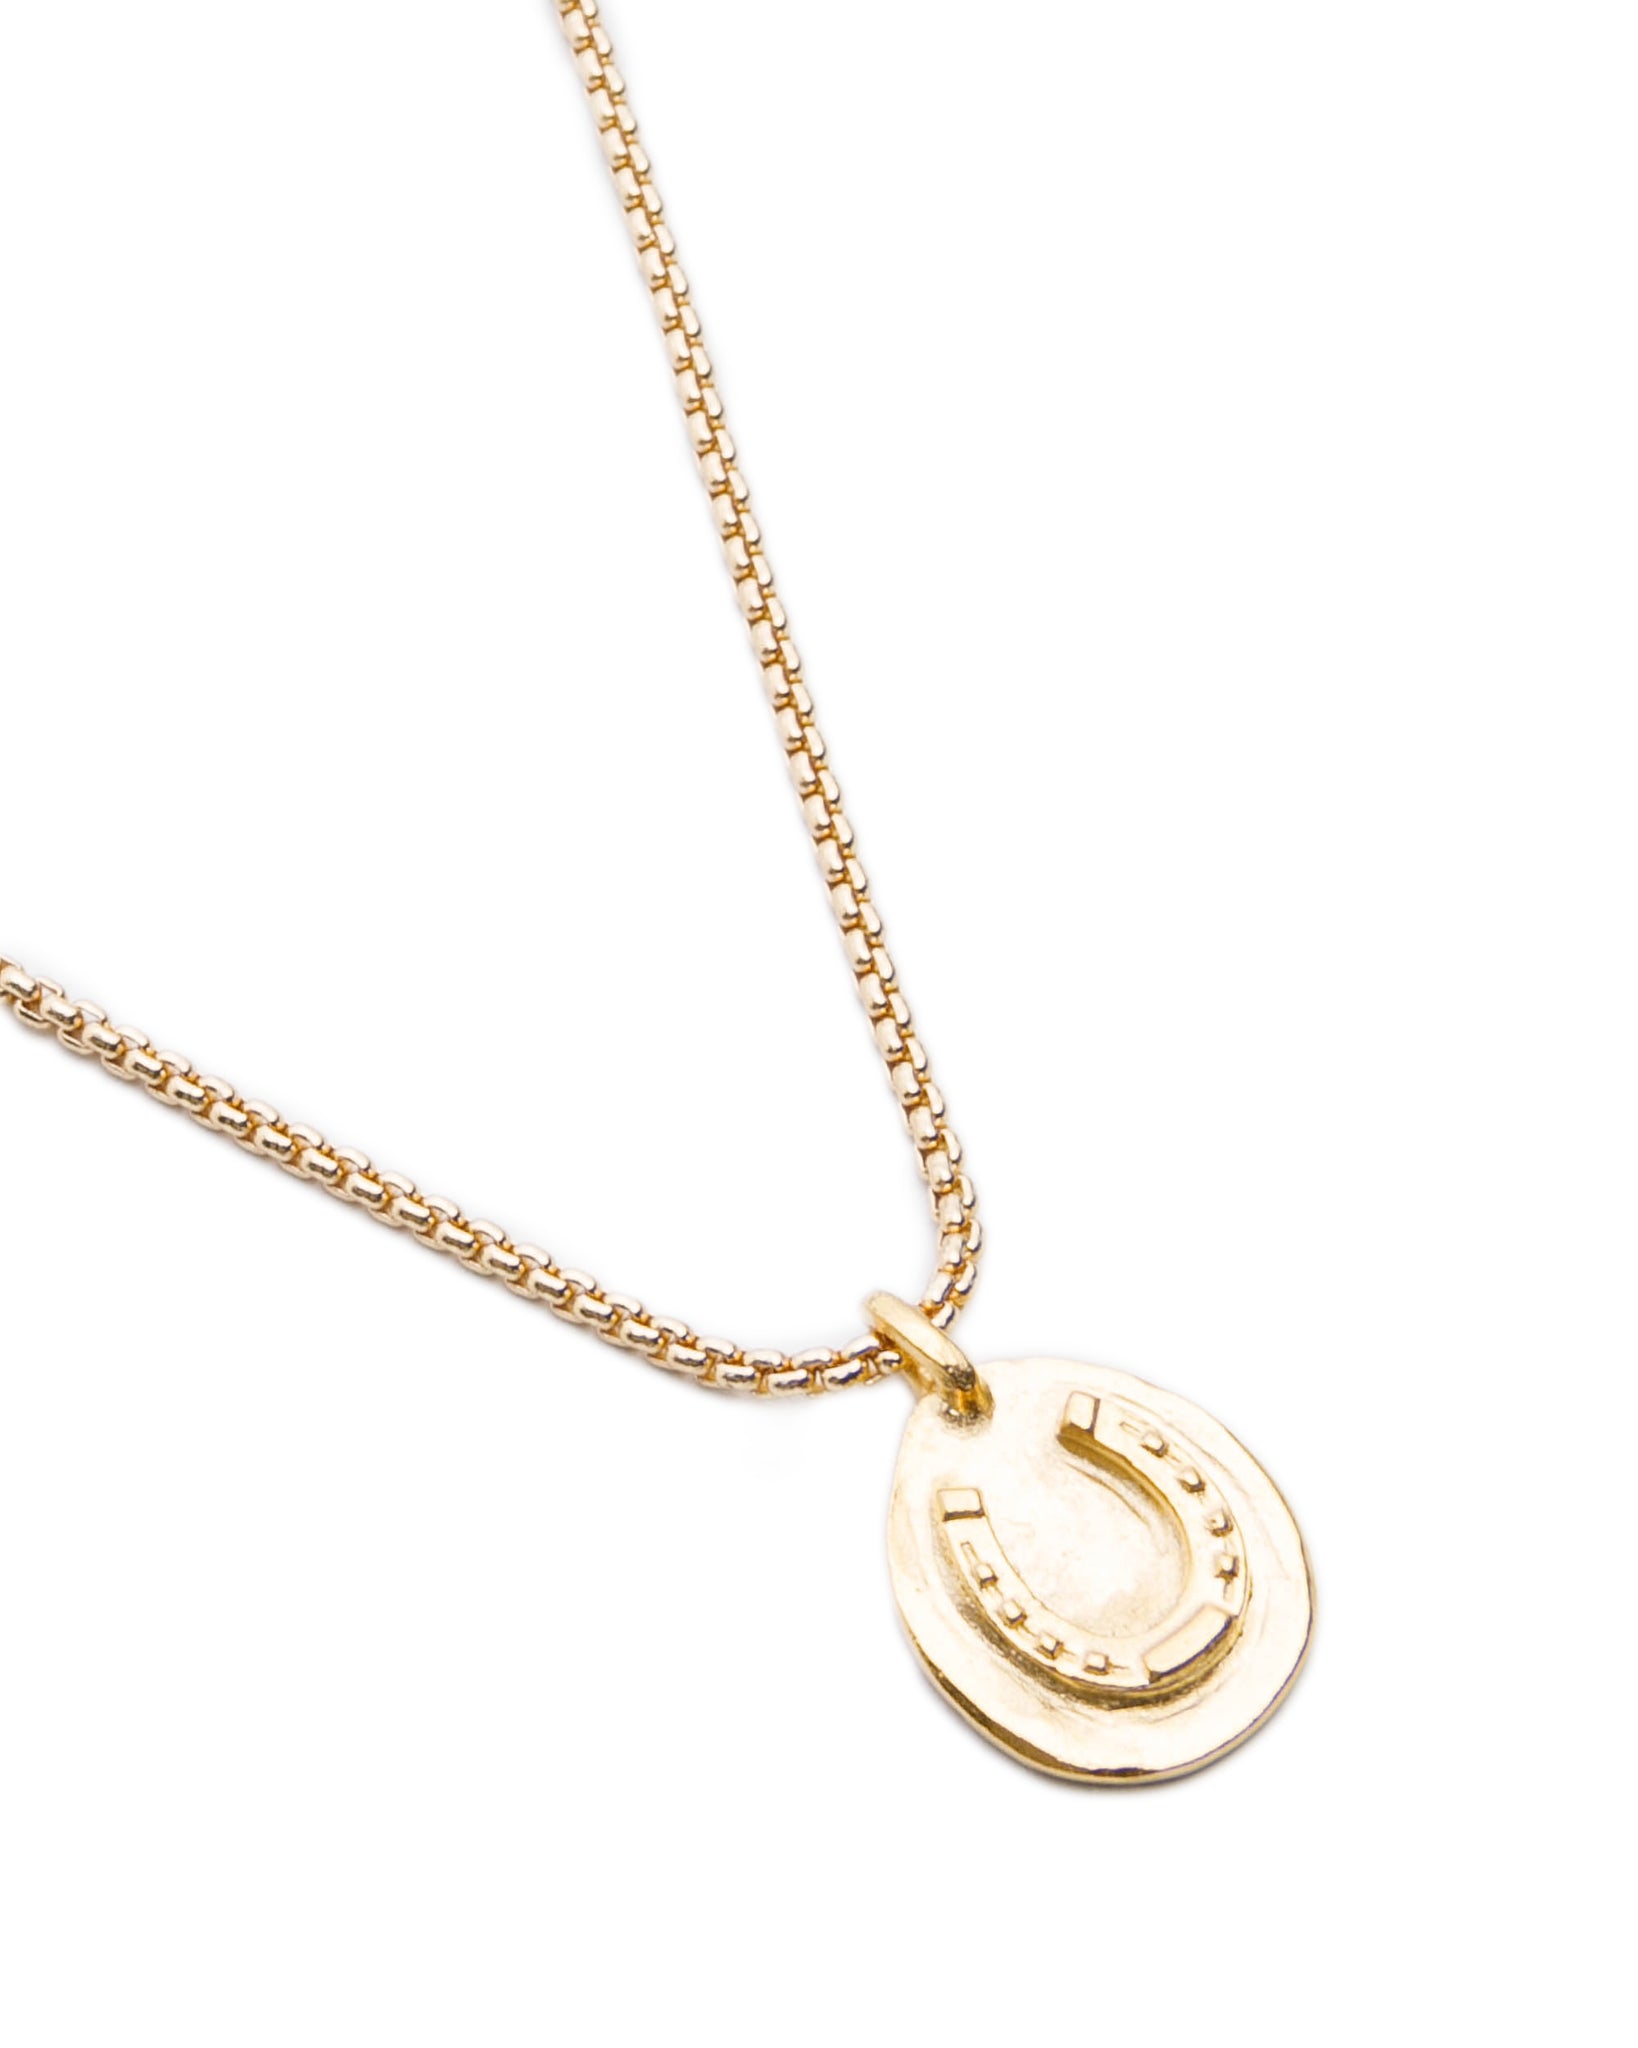 Lucky Horseshoe Gold Horseshoe Necklace Delicate Pendant Chain Charm Wish |  eBay